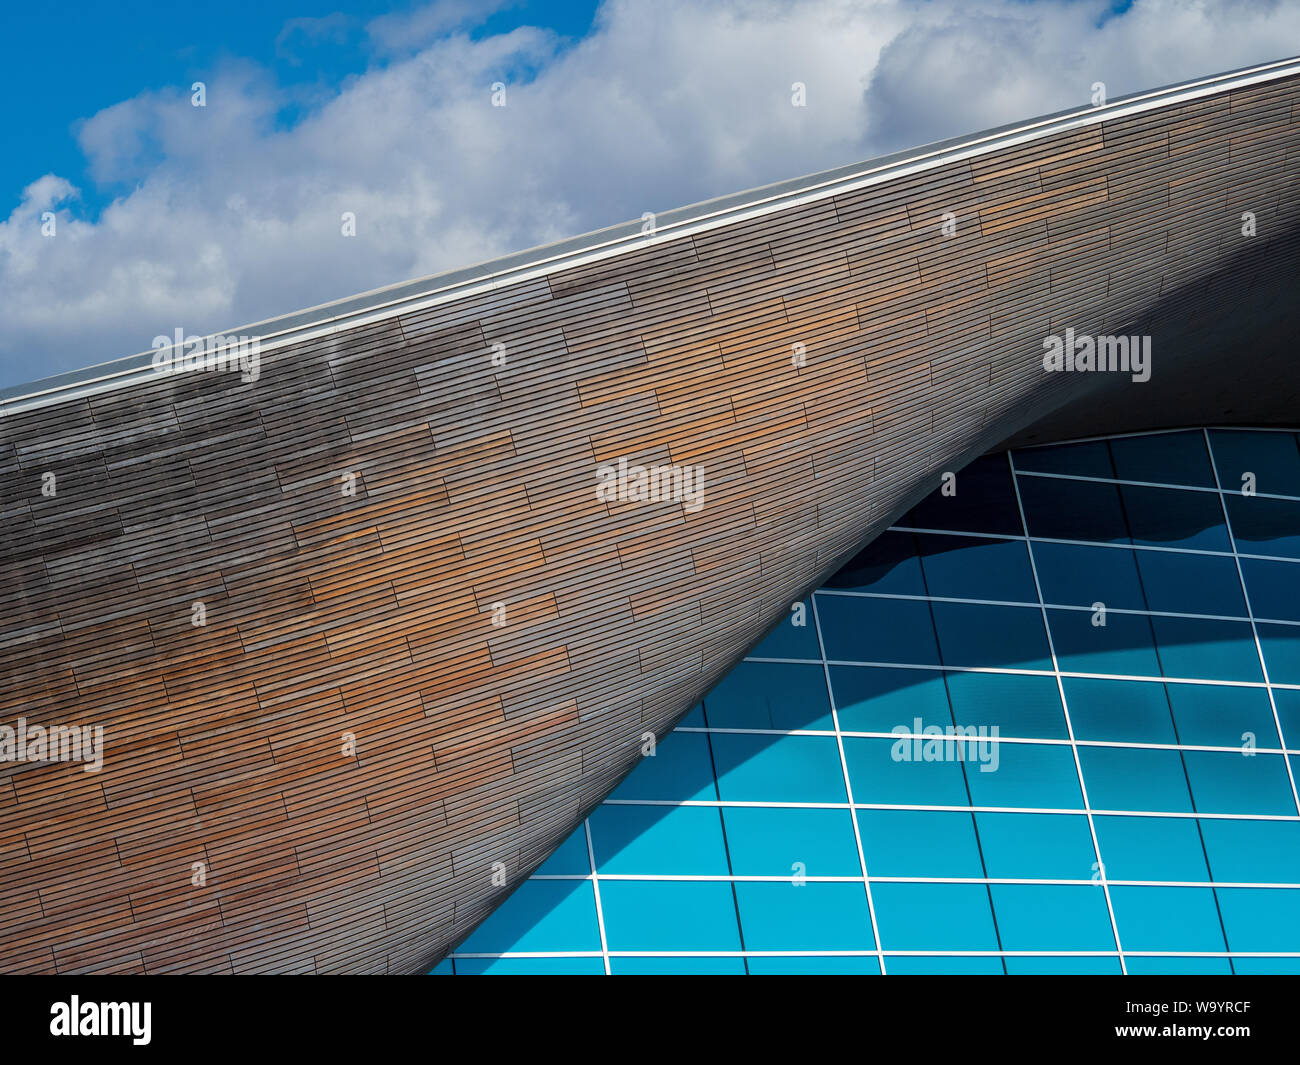 Centre aquatique de Londres - détails de conception de piscines pour les Jeux Olympiques Jeux Olympiques 2012 - Design Zaha Hadid Architects. Compl. 2011, coûte £269 millions. Banque D'Images